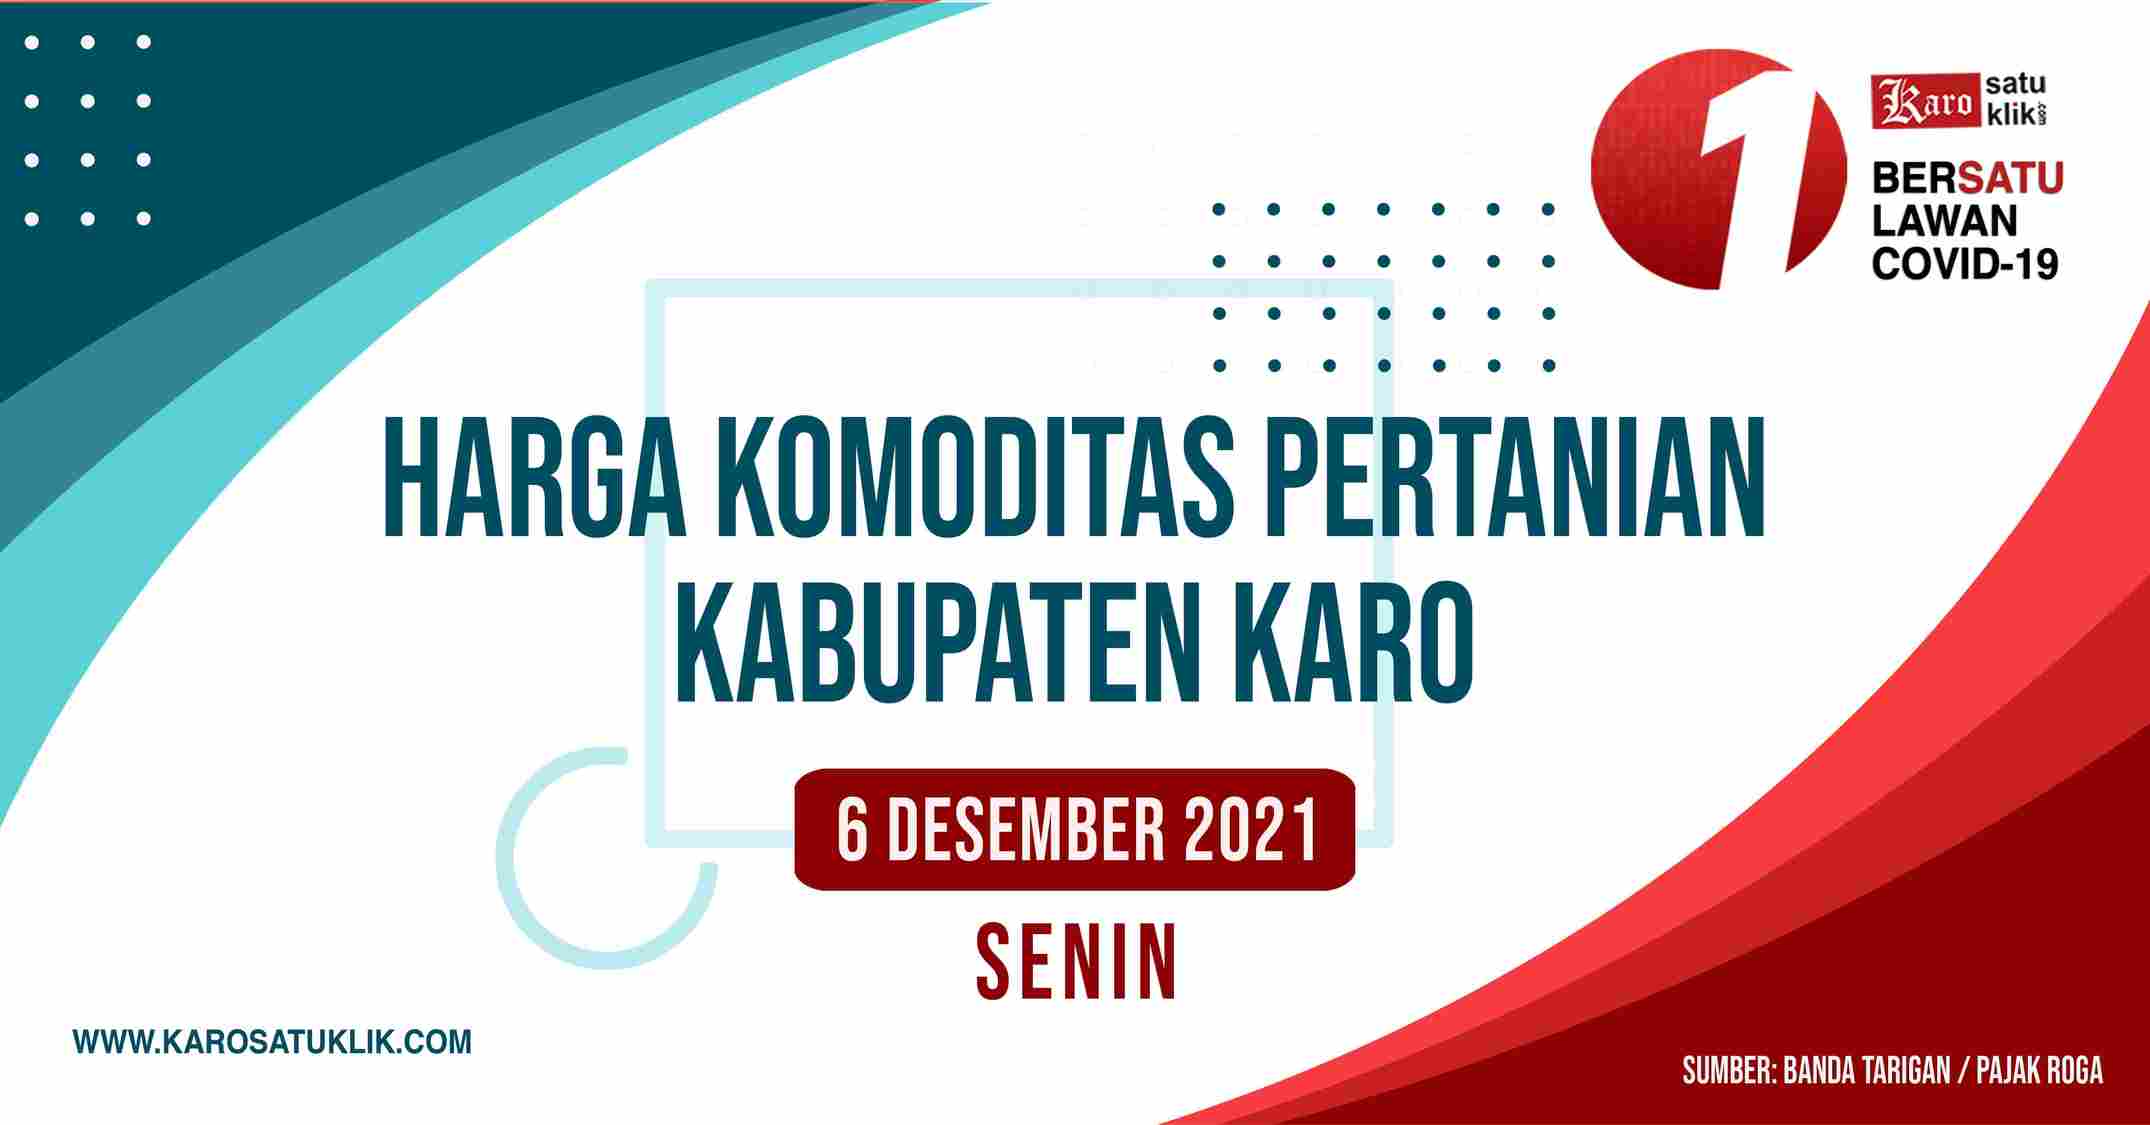 Daftar Harga Komoditas Pertanian Kabupaten Karo, 6 Desember 2021